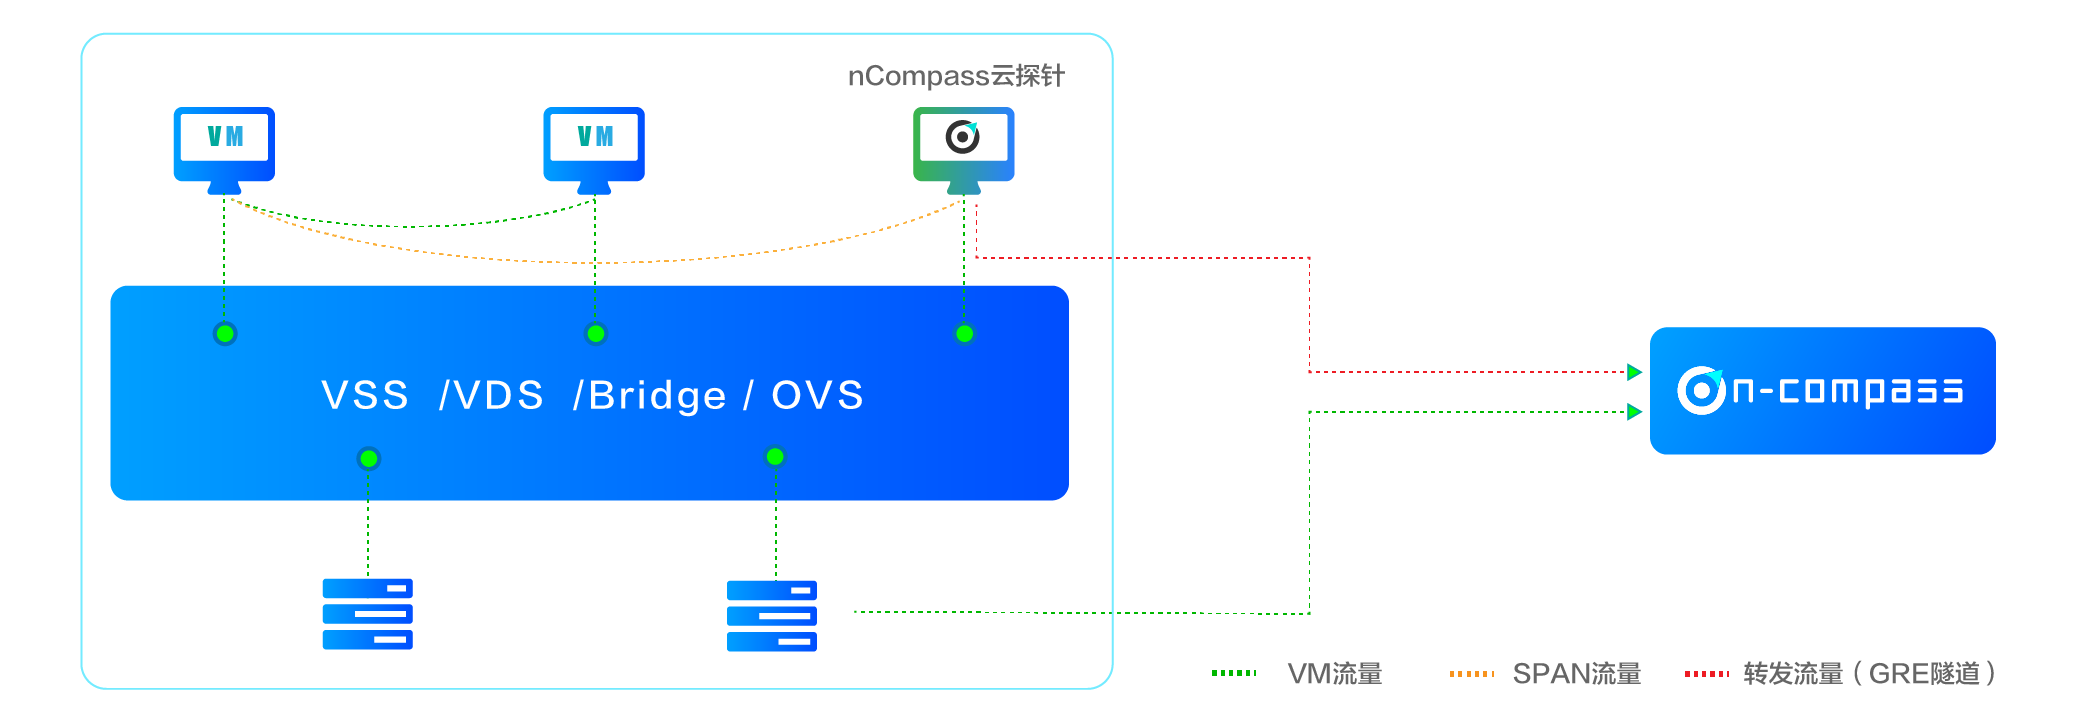 Bonree NPM可部署在用户的共有云或私有云环境 ，不论是腾讯 、阿里和华为的公有云ECS环境 ，还是VMware 、KVM等私有云环境 ，均可通过在宿主机中部署Reesii云探针 ，以VM或Agent的方式 ，采集虚拟交换机采集流量数据 ，用于感知及分析虚拟化网络 、组件 、VM的异常性能事件 。